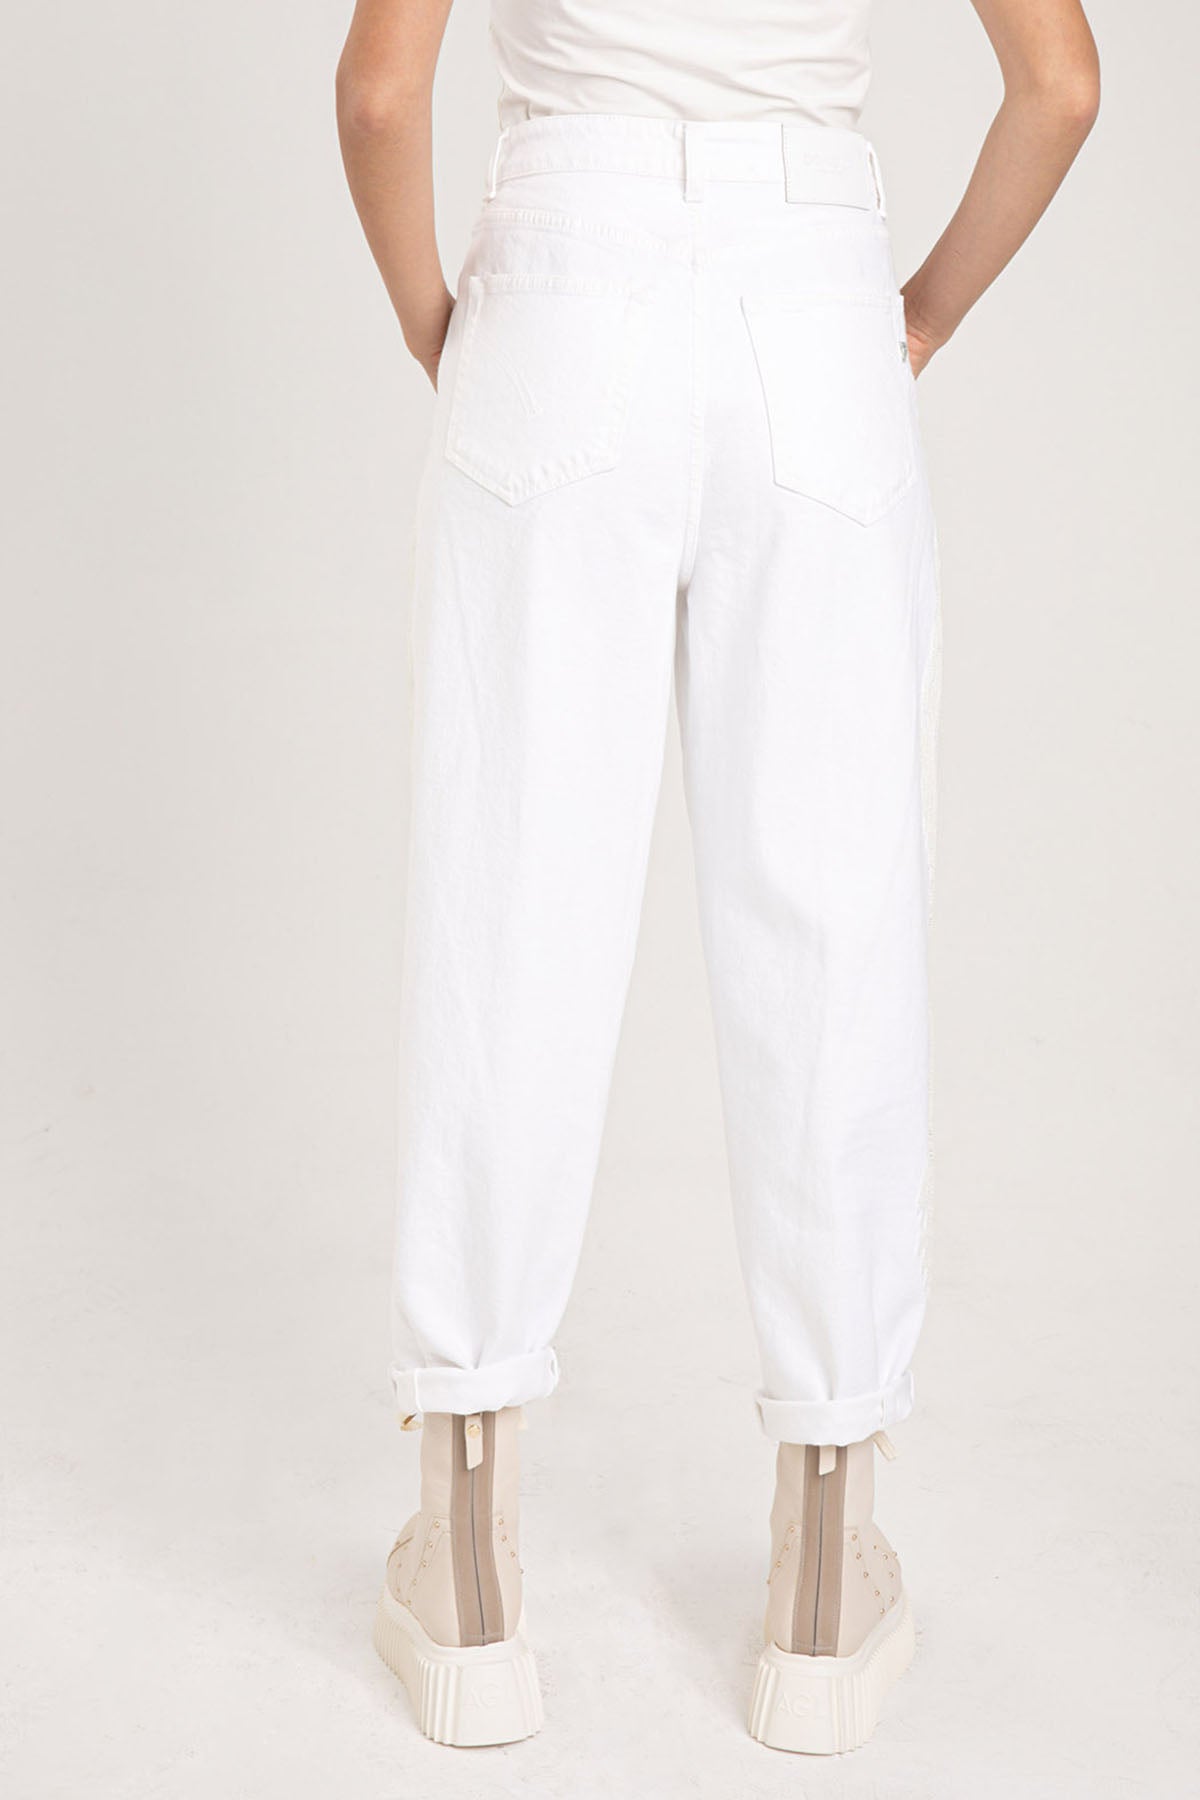 Dondup Claire Loose Fit Tek Pile Jeans-Libas Trendy Fashion Store